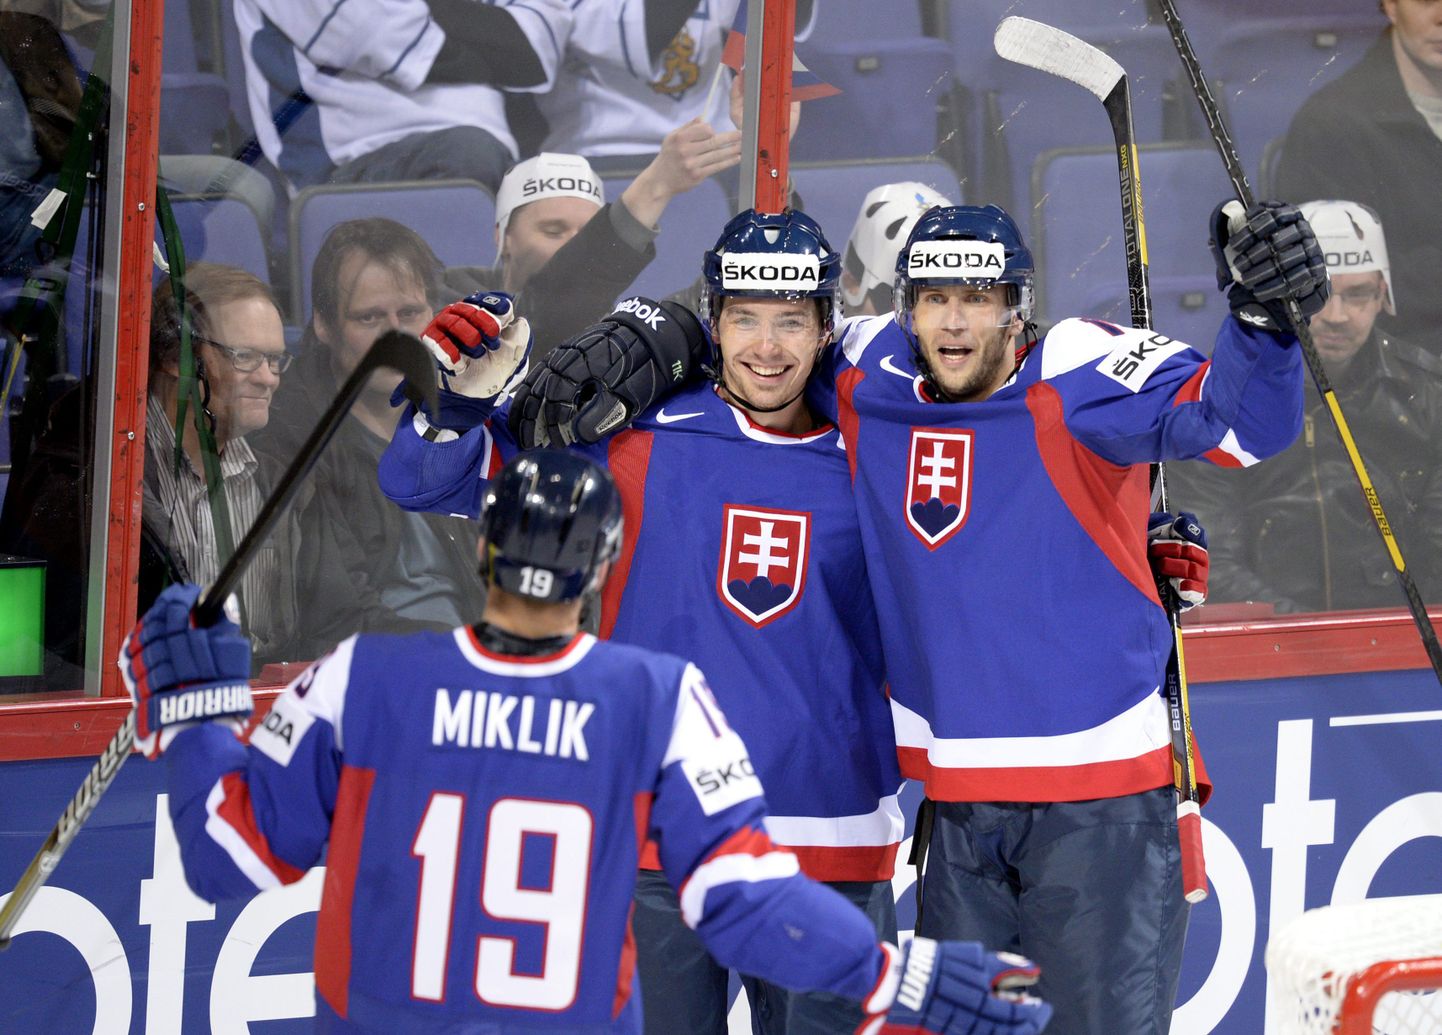 Slovakkia koondise mängijad väravat tähistamas.